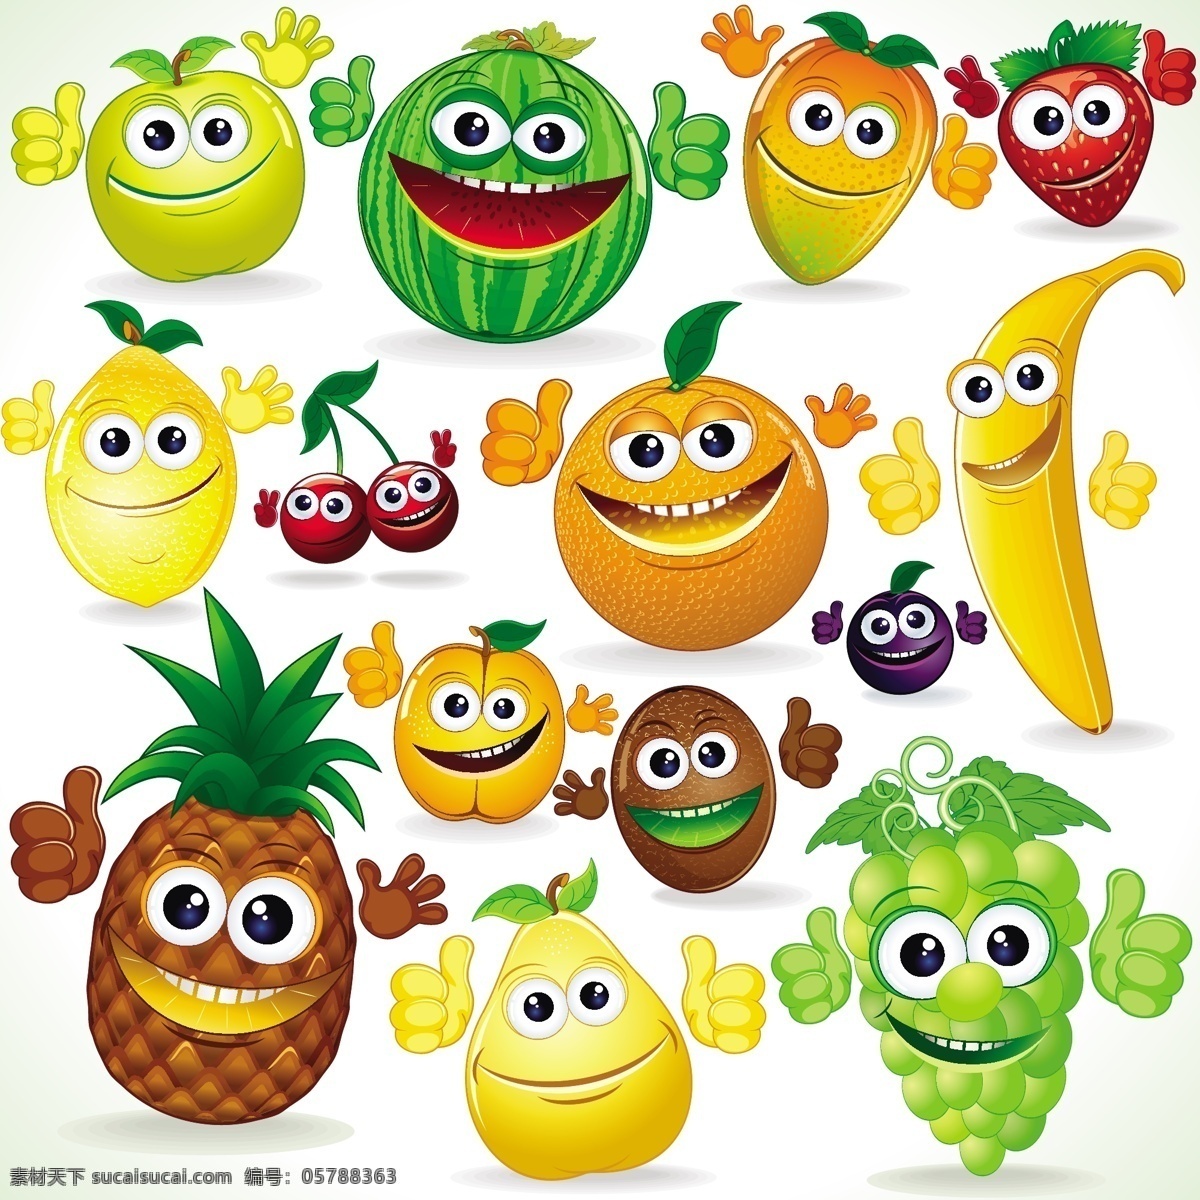 卡通水果表情 水果 表情 笑脸 苹果 卡通 有趣 可爱 滑稽 幽默 手绘 矢量 蔬菜水果 卡通设计 生物世界